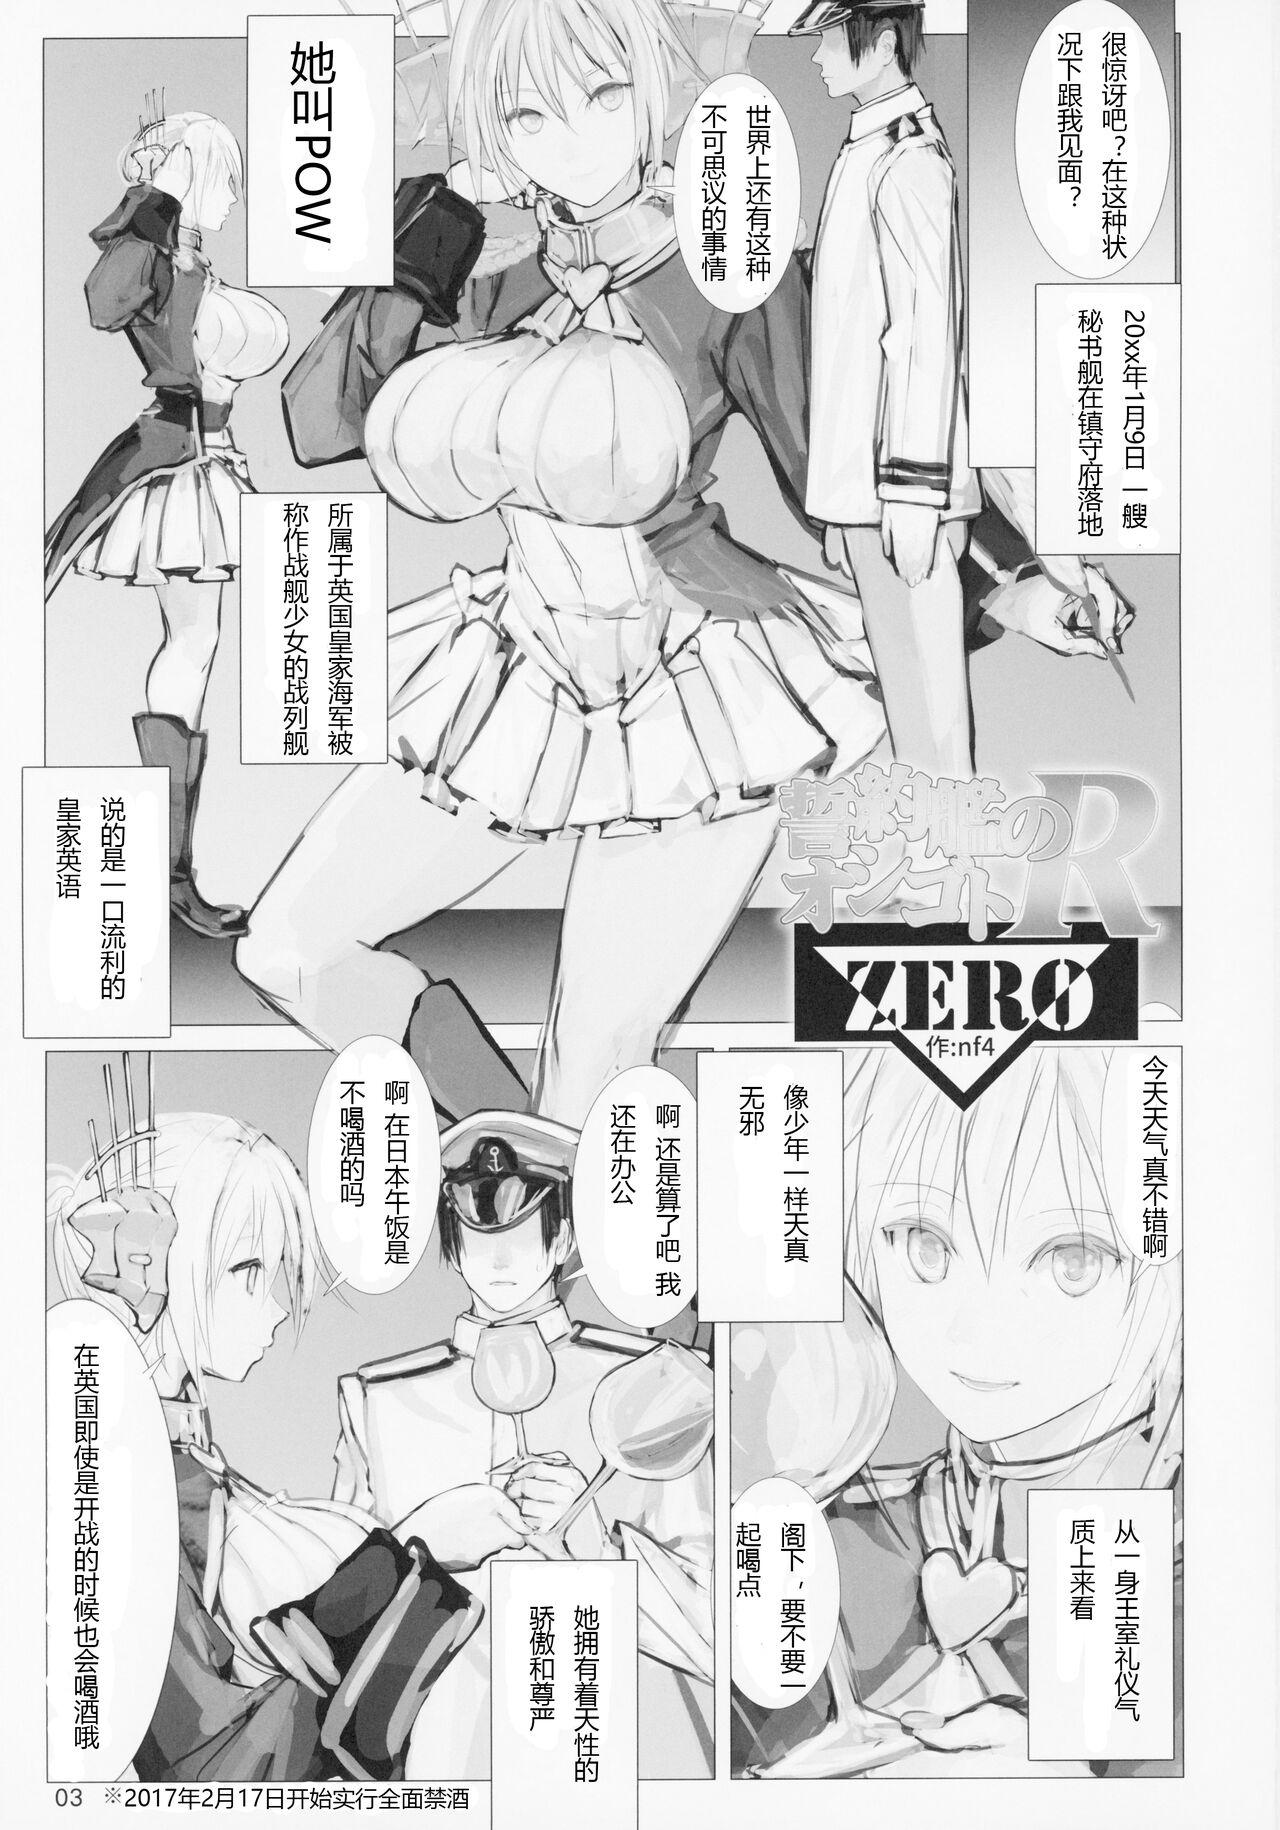 Trans Seiyakukan no Oshigoto R ZERO - Warship girls Viet Nam - Page 2